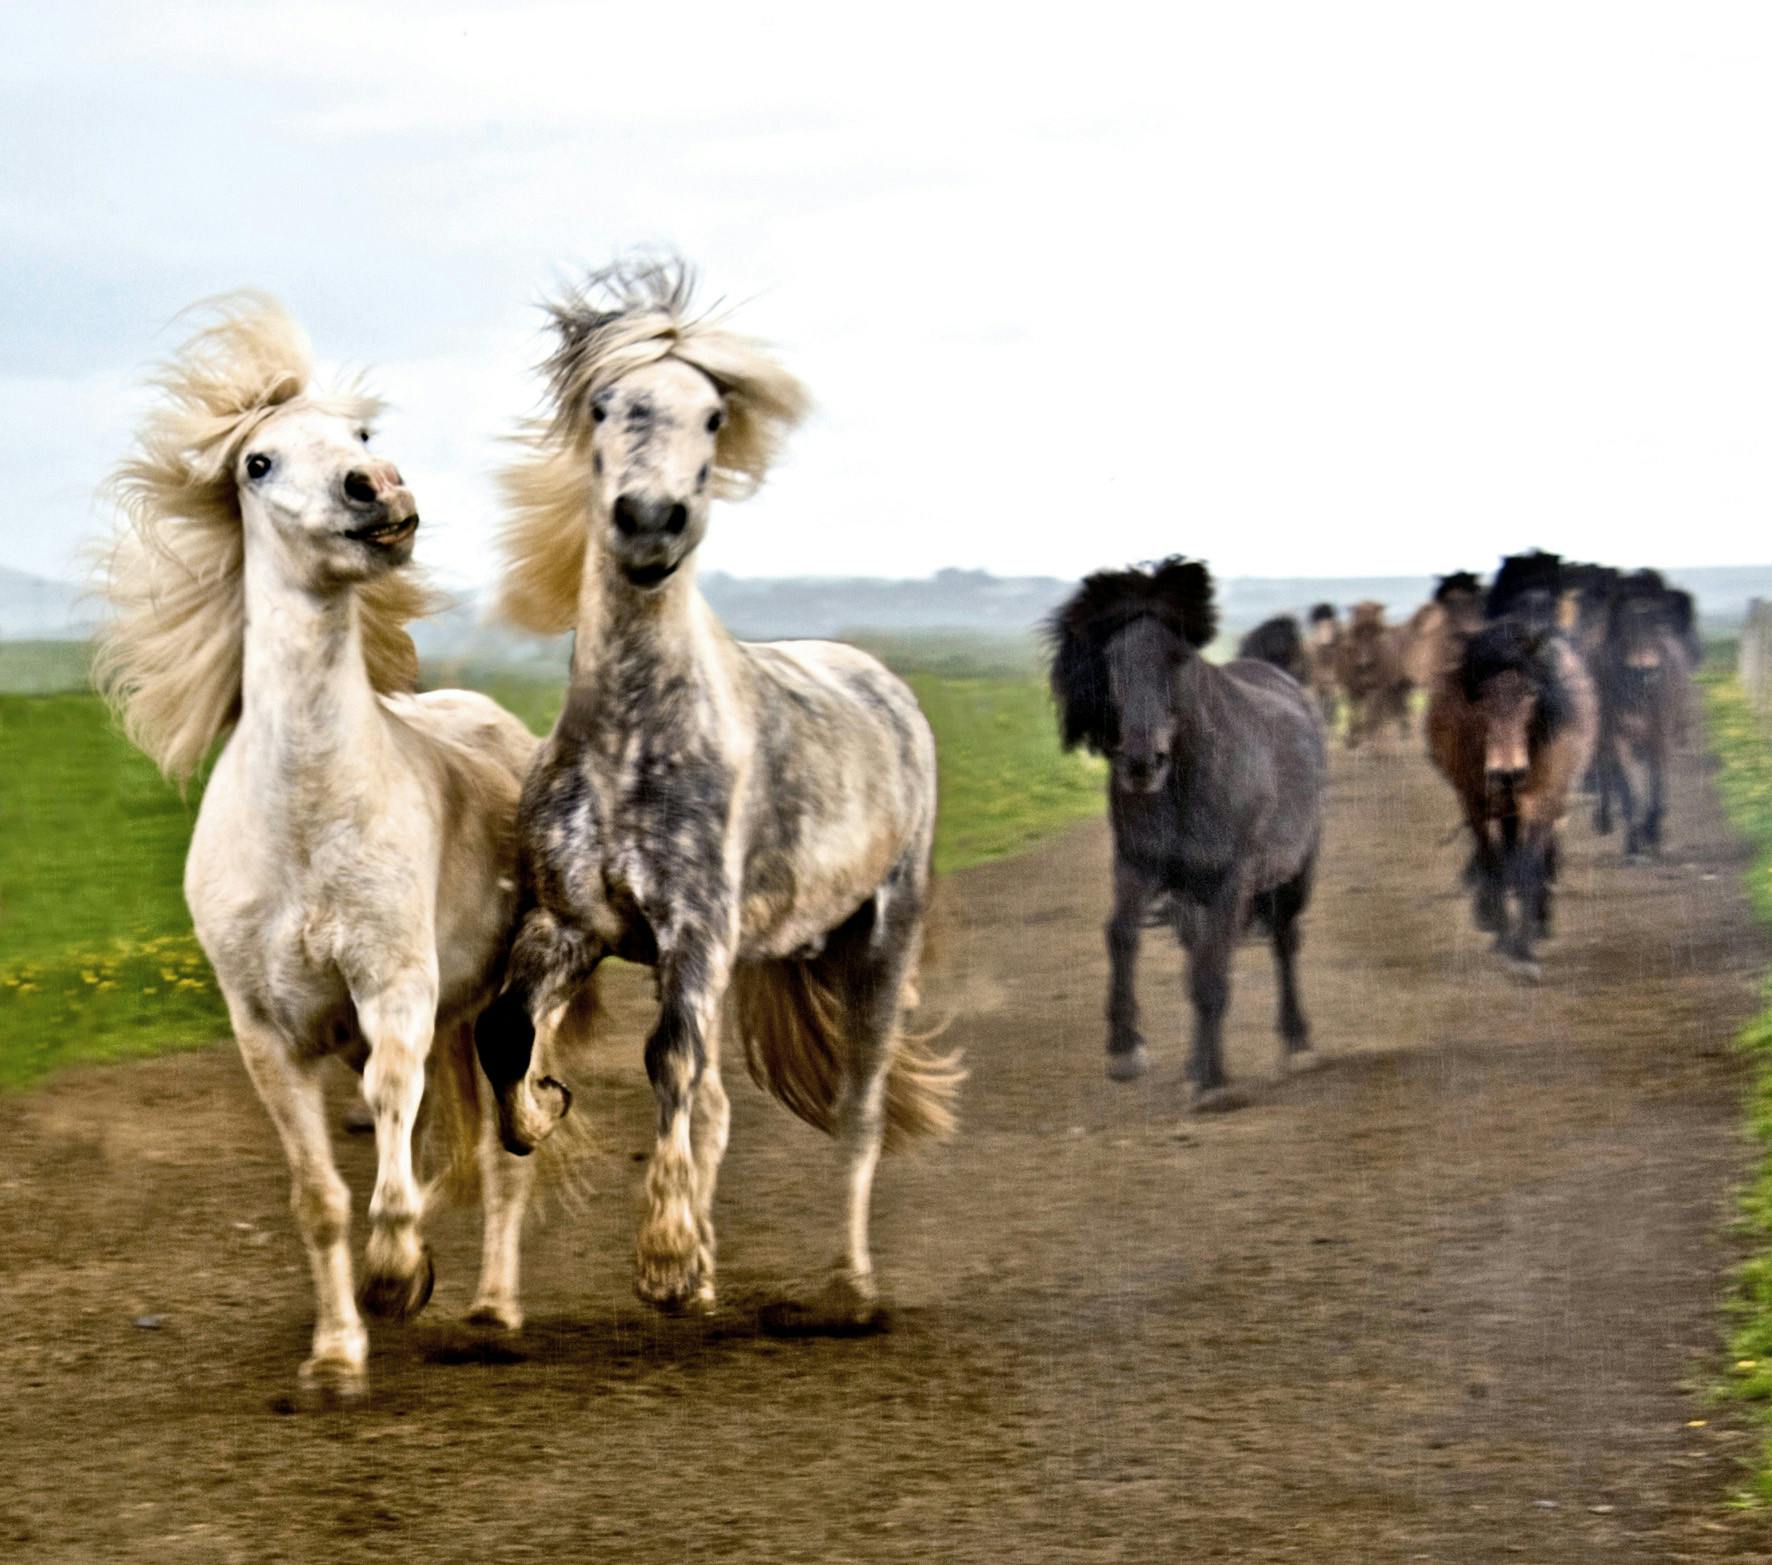 Iceland horse riding horses runnin.jpg